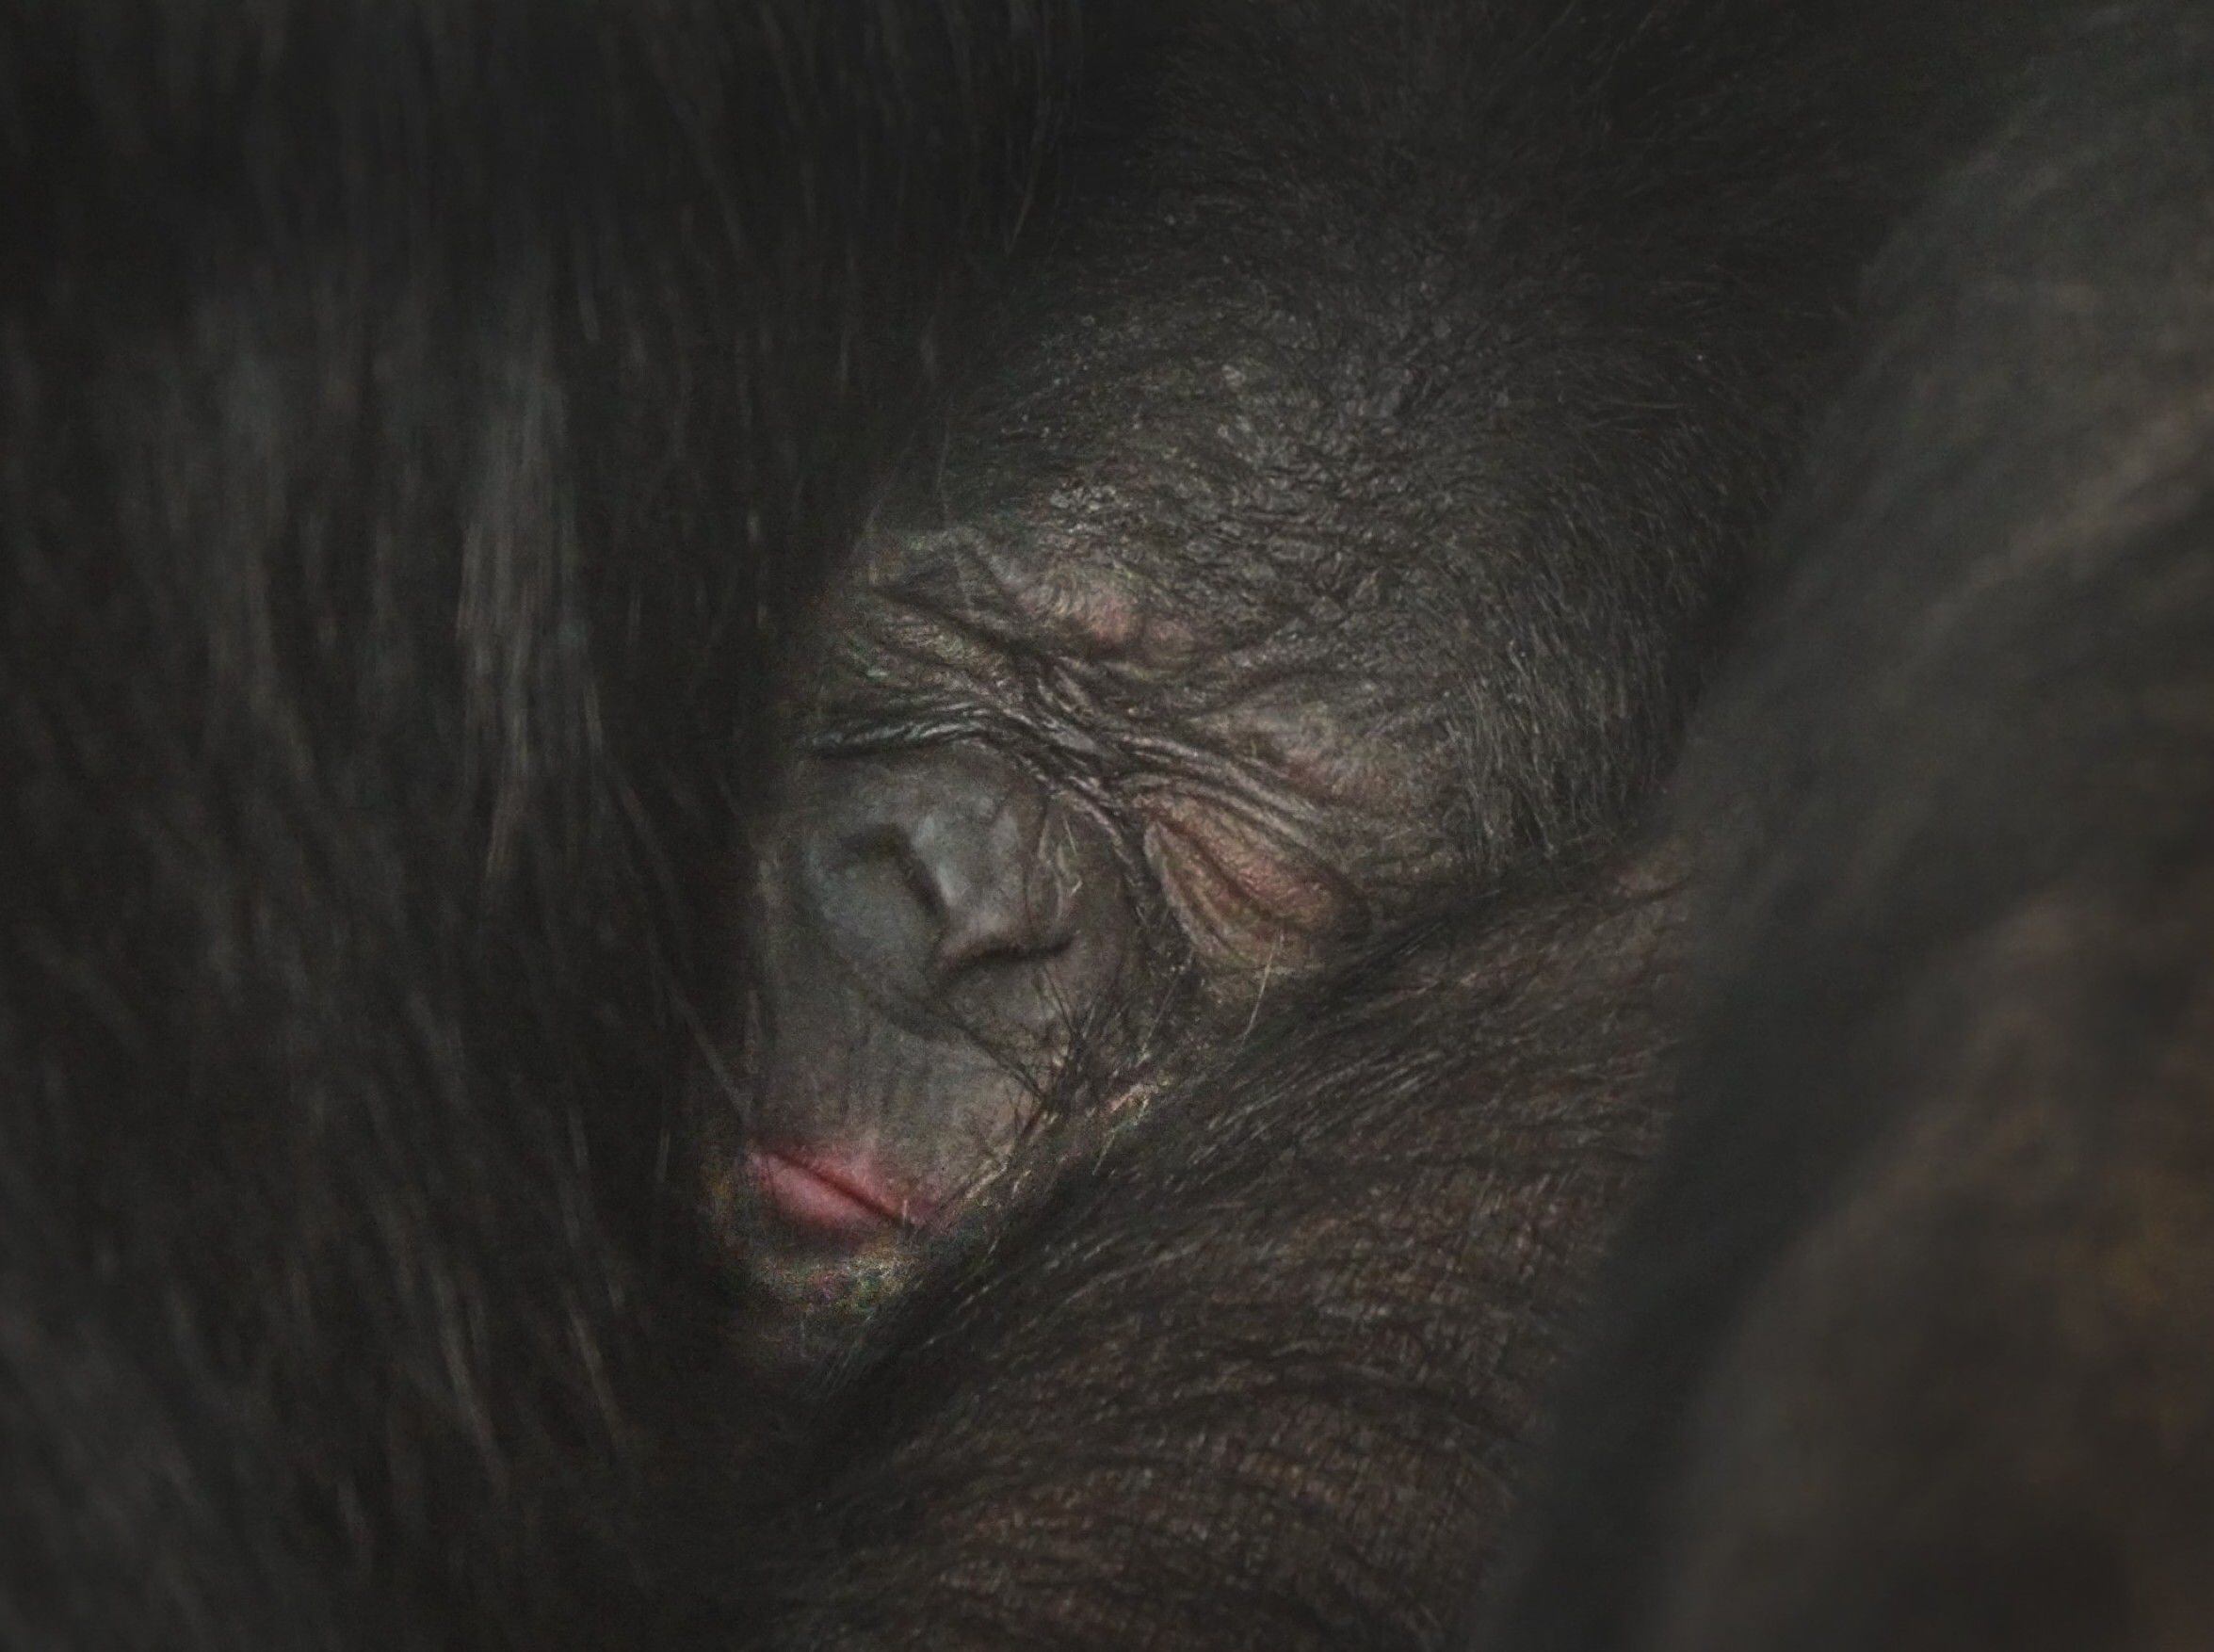 Twycross Zoo welcomes baby bonobo